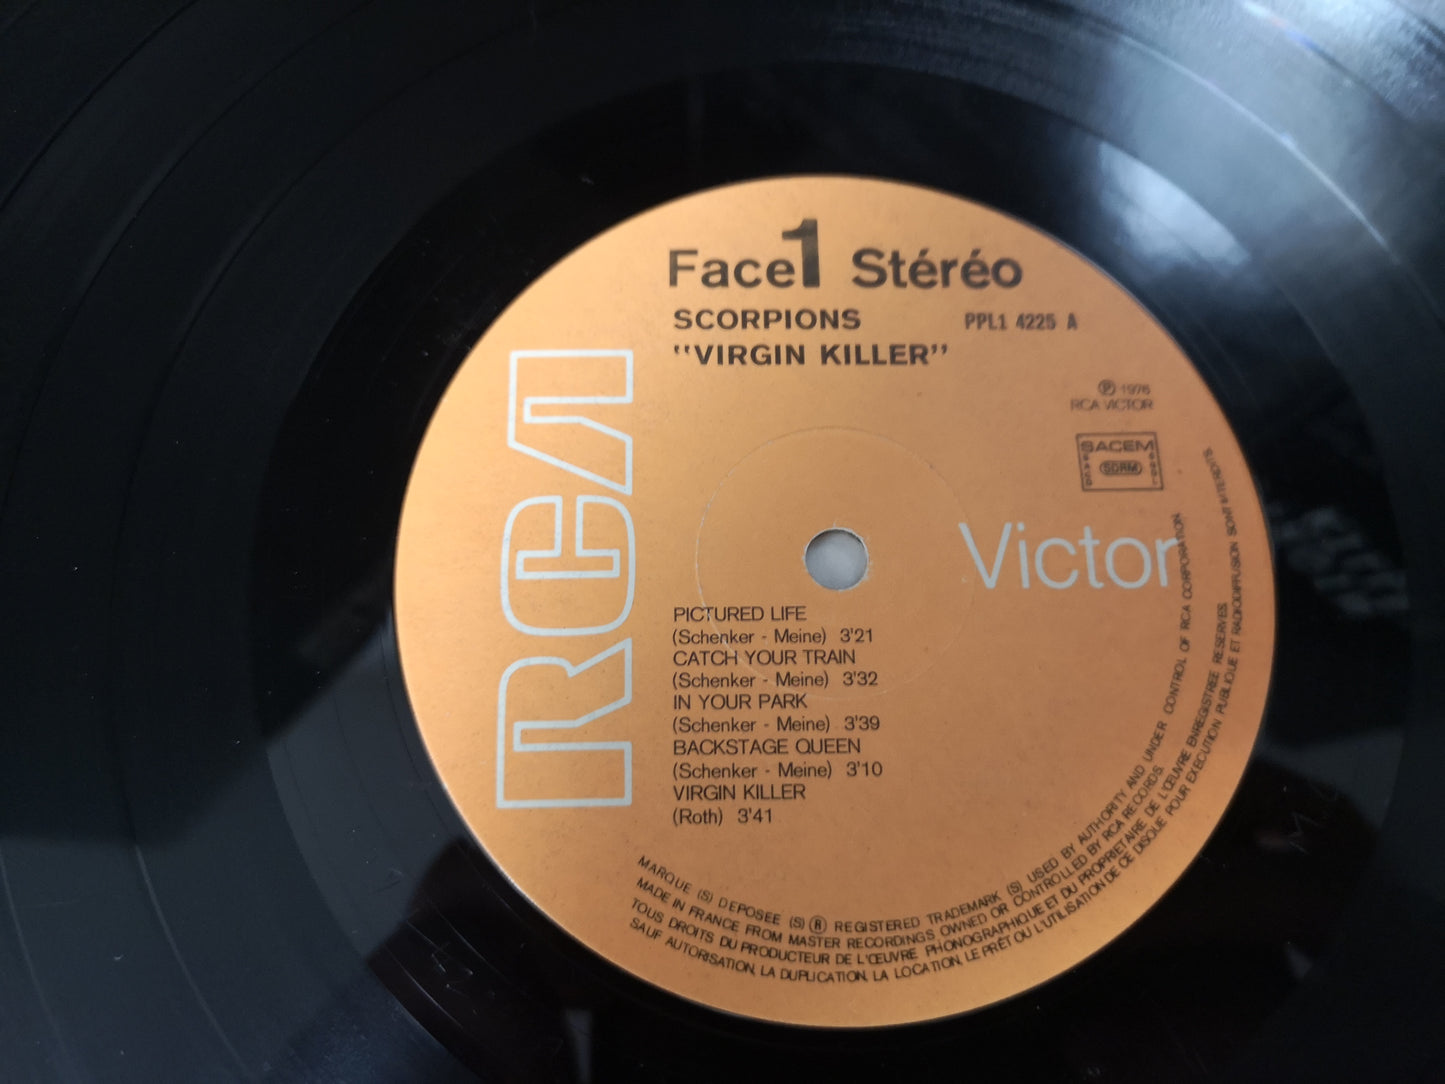 Scorpions "Virgin Killer" Orig France 1976 VG++/VG++ (Gatefold Cover)